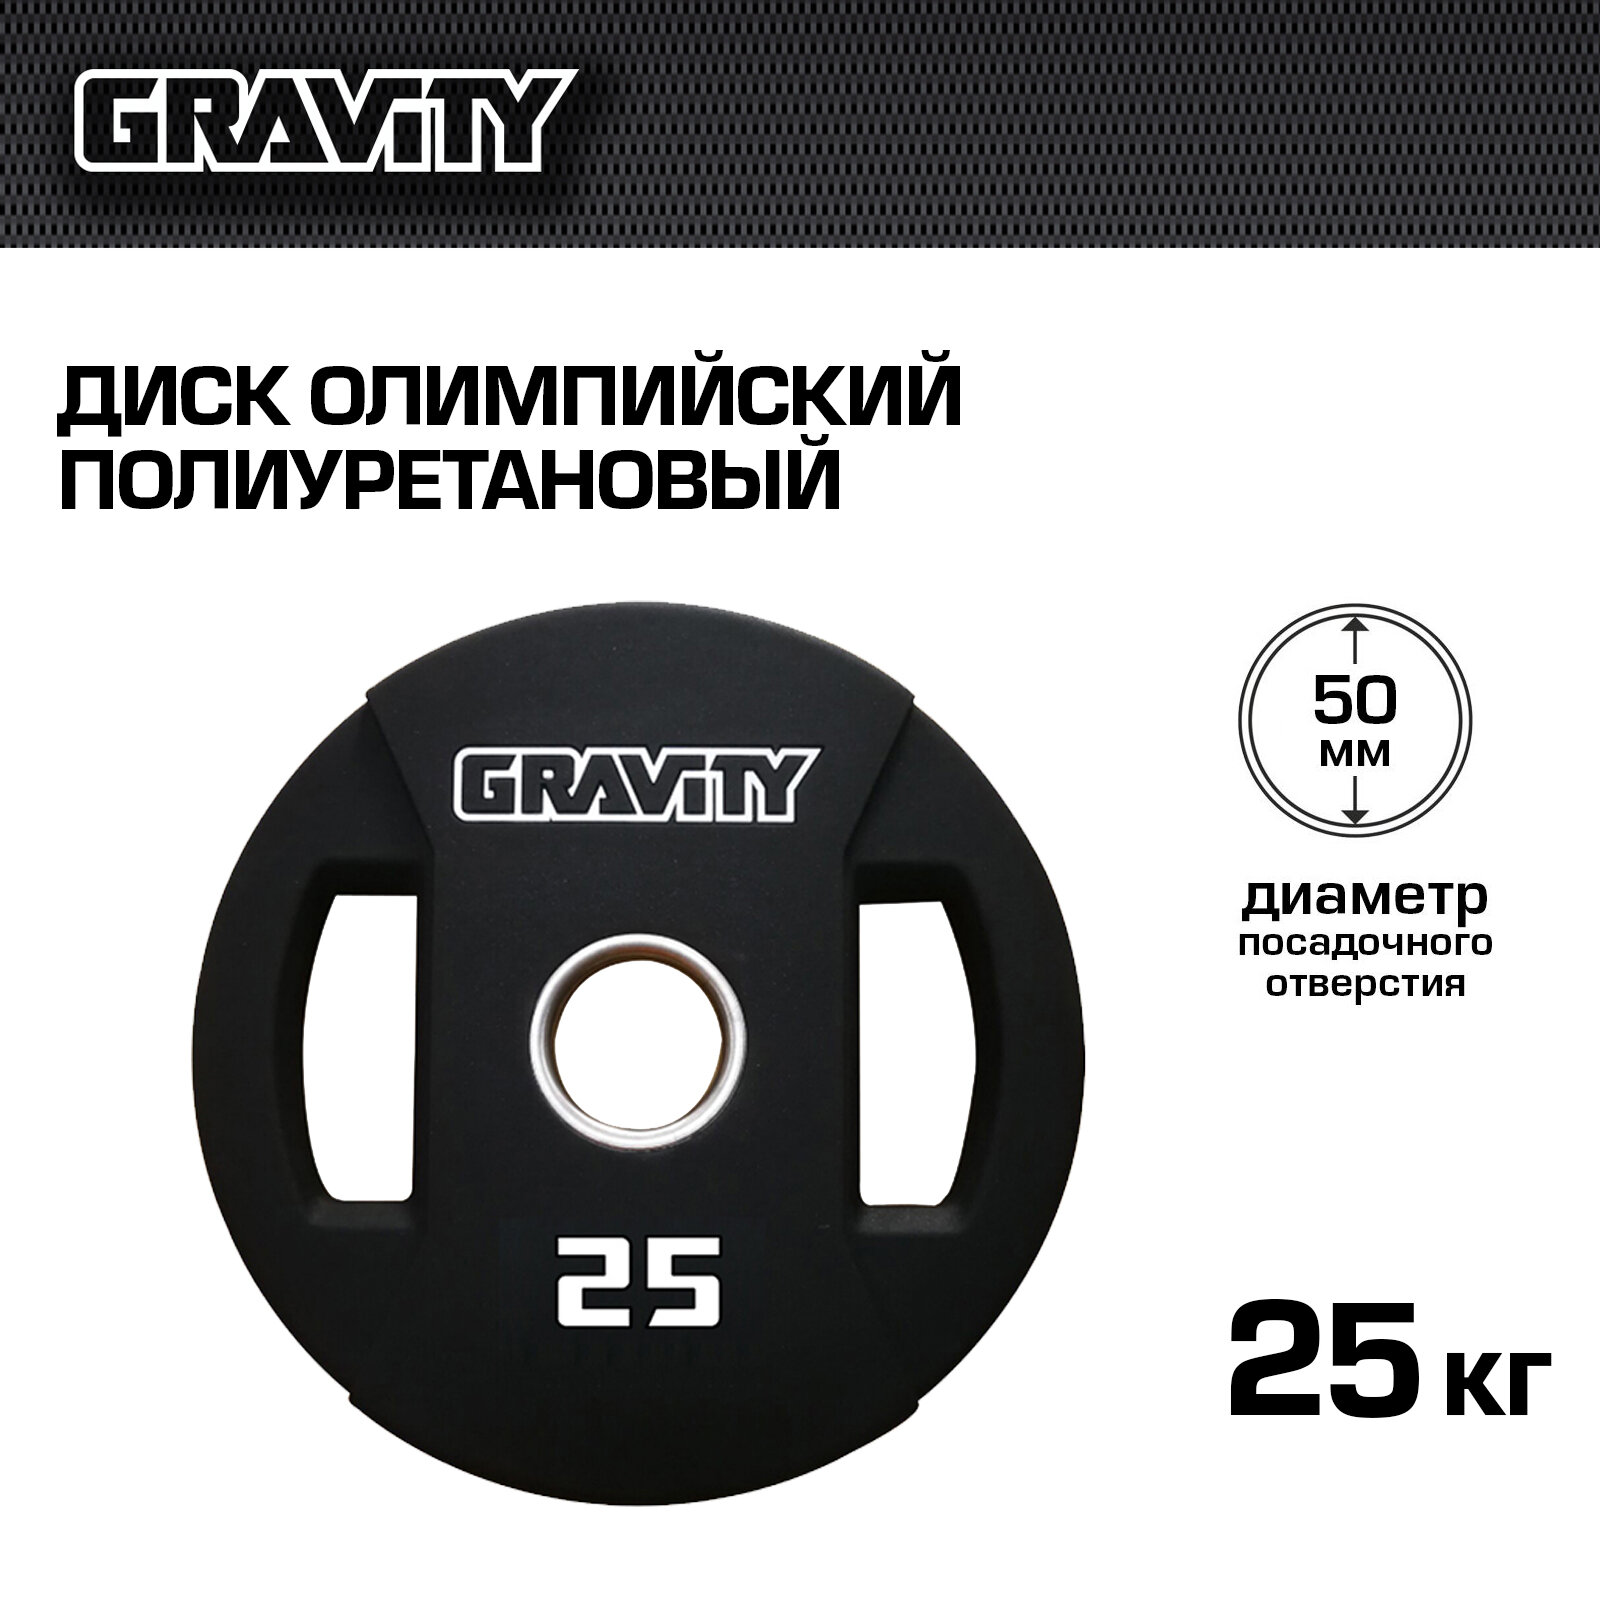 Диск олимпийский полиуретановый Gravity, 25 кг